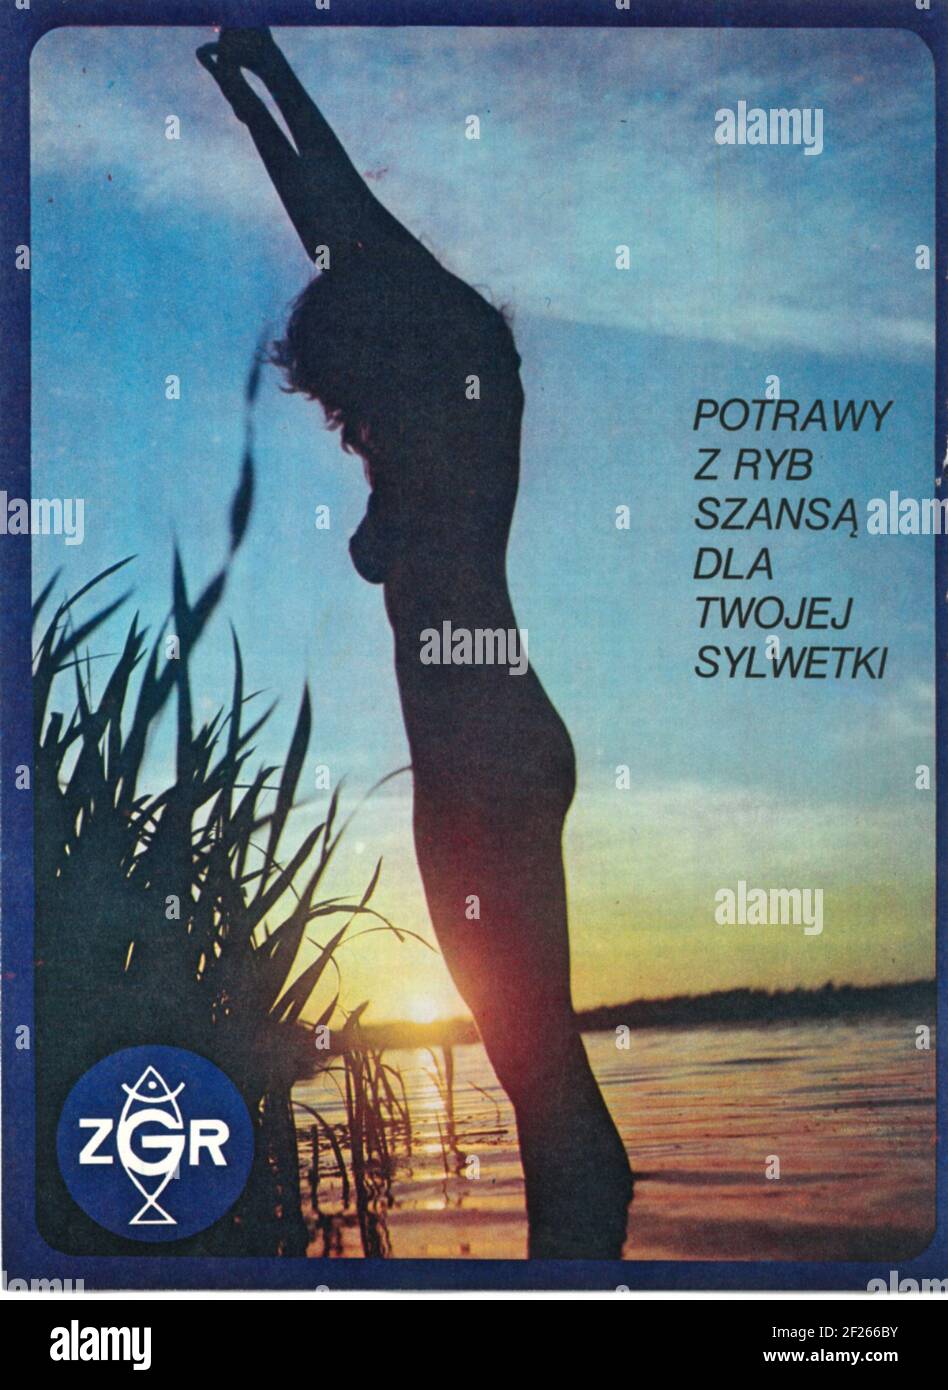 Polska reklama vintage ZGR Potrawy z ryb lata 70te reklama prasowa Stock Photo